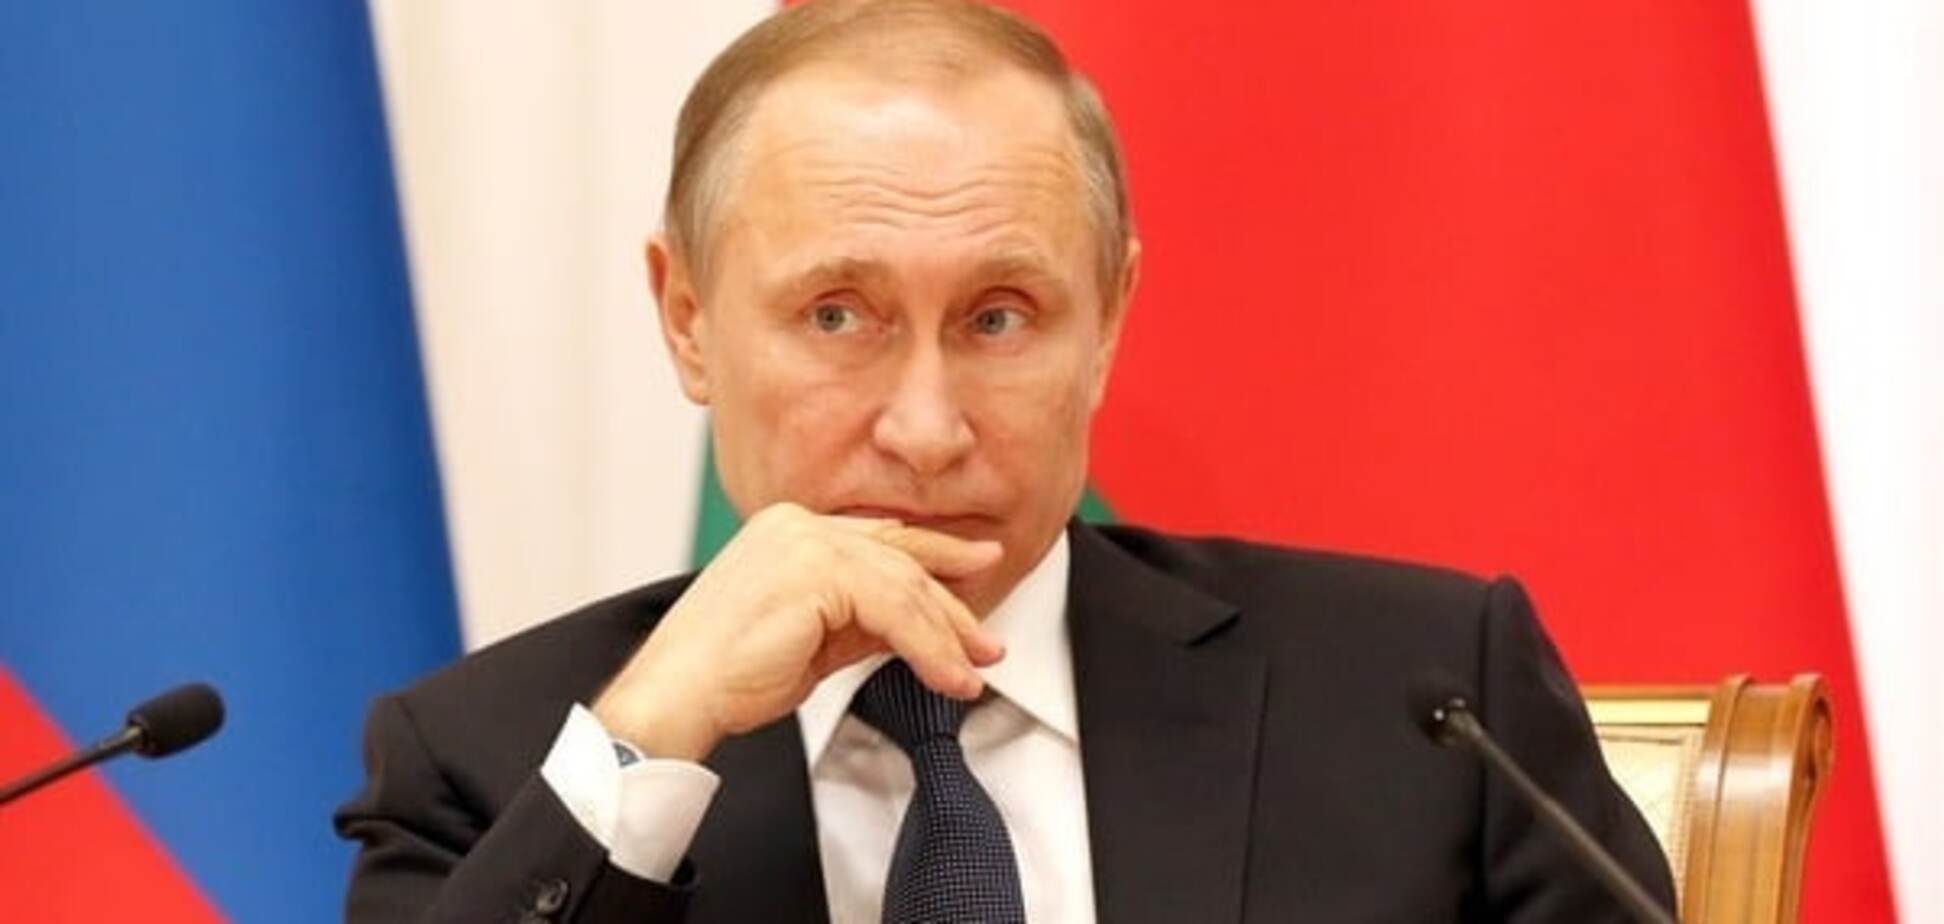 Статус не допоможе: Слава Рабинович заявив, що якщо Савченко помре, Путіна чекає Гаага